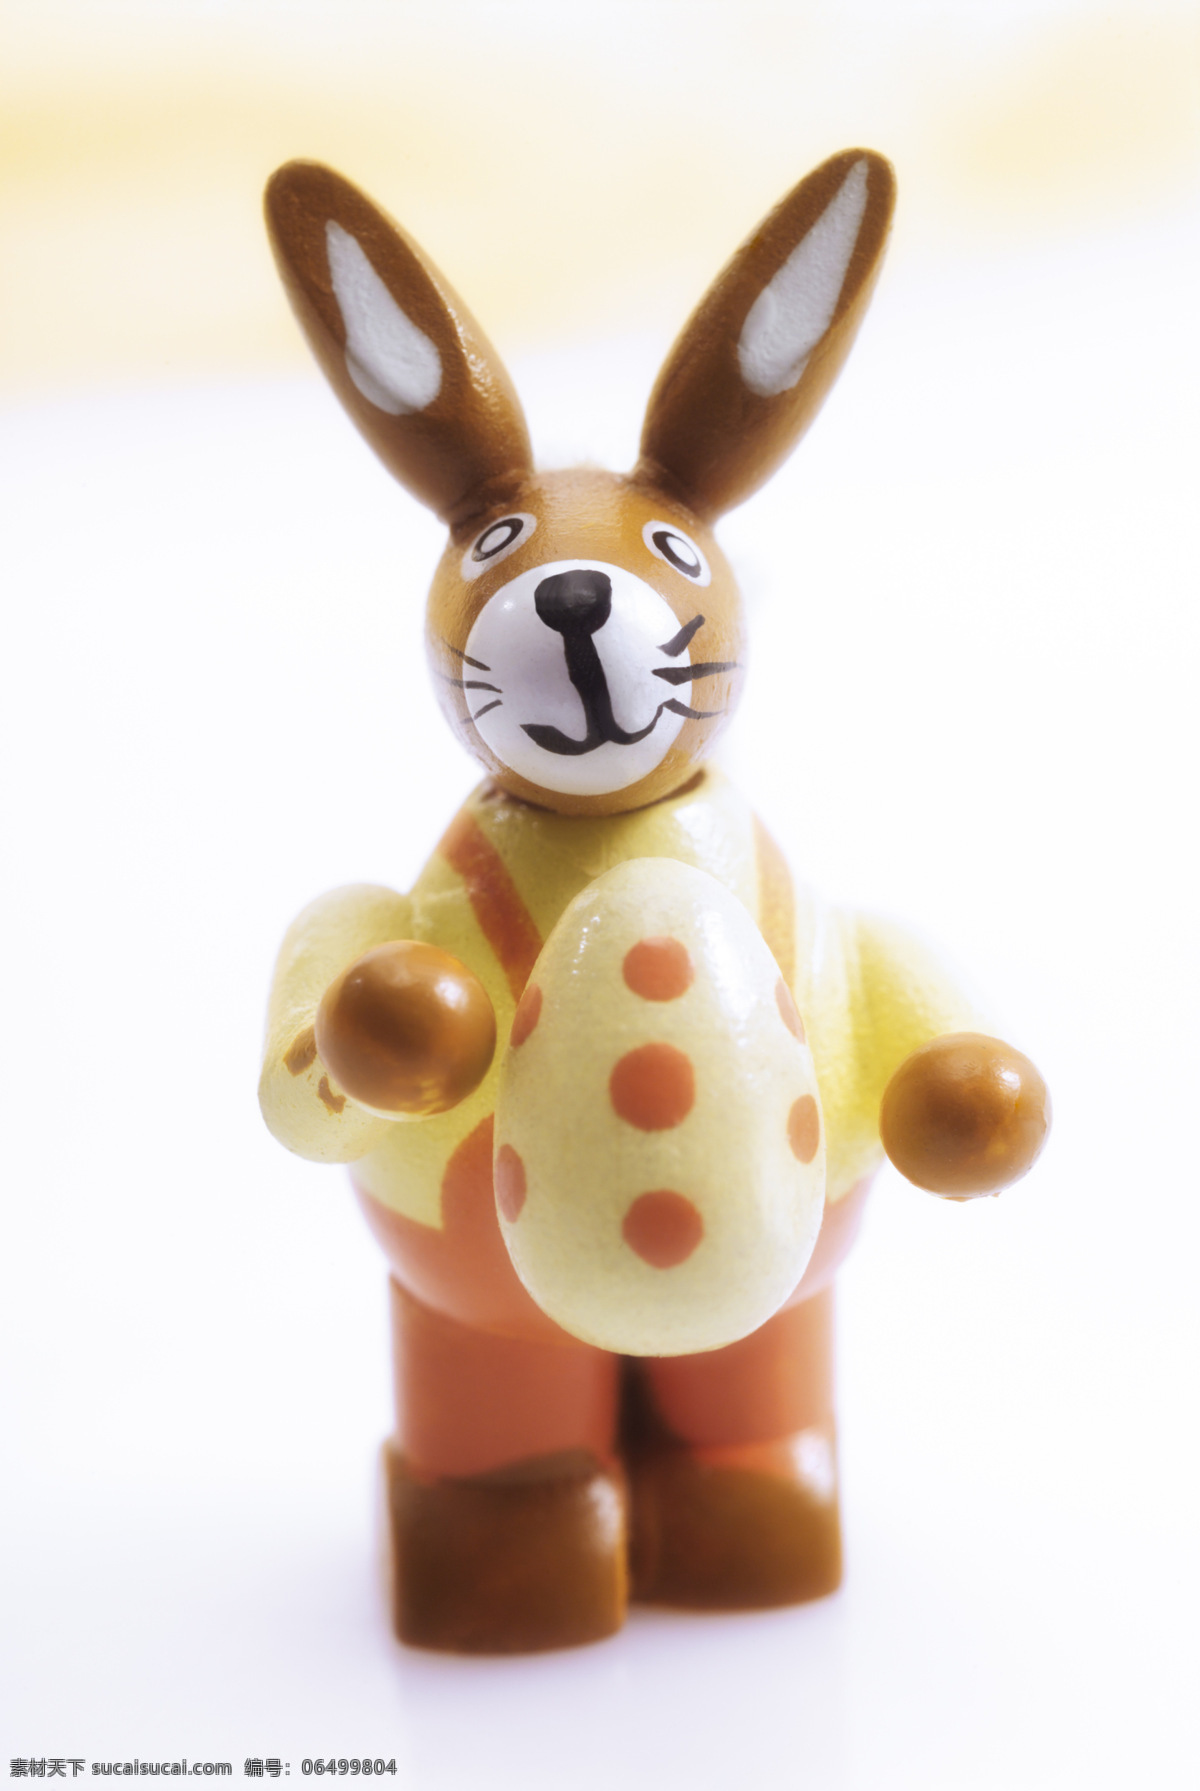 玩具 兔 摆件 彩蛋 动物 可爱 生活百科 兔子 玩具兔 小动物 娱乐休闲 psd源文件